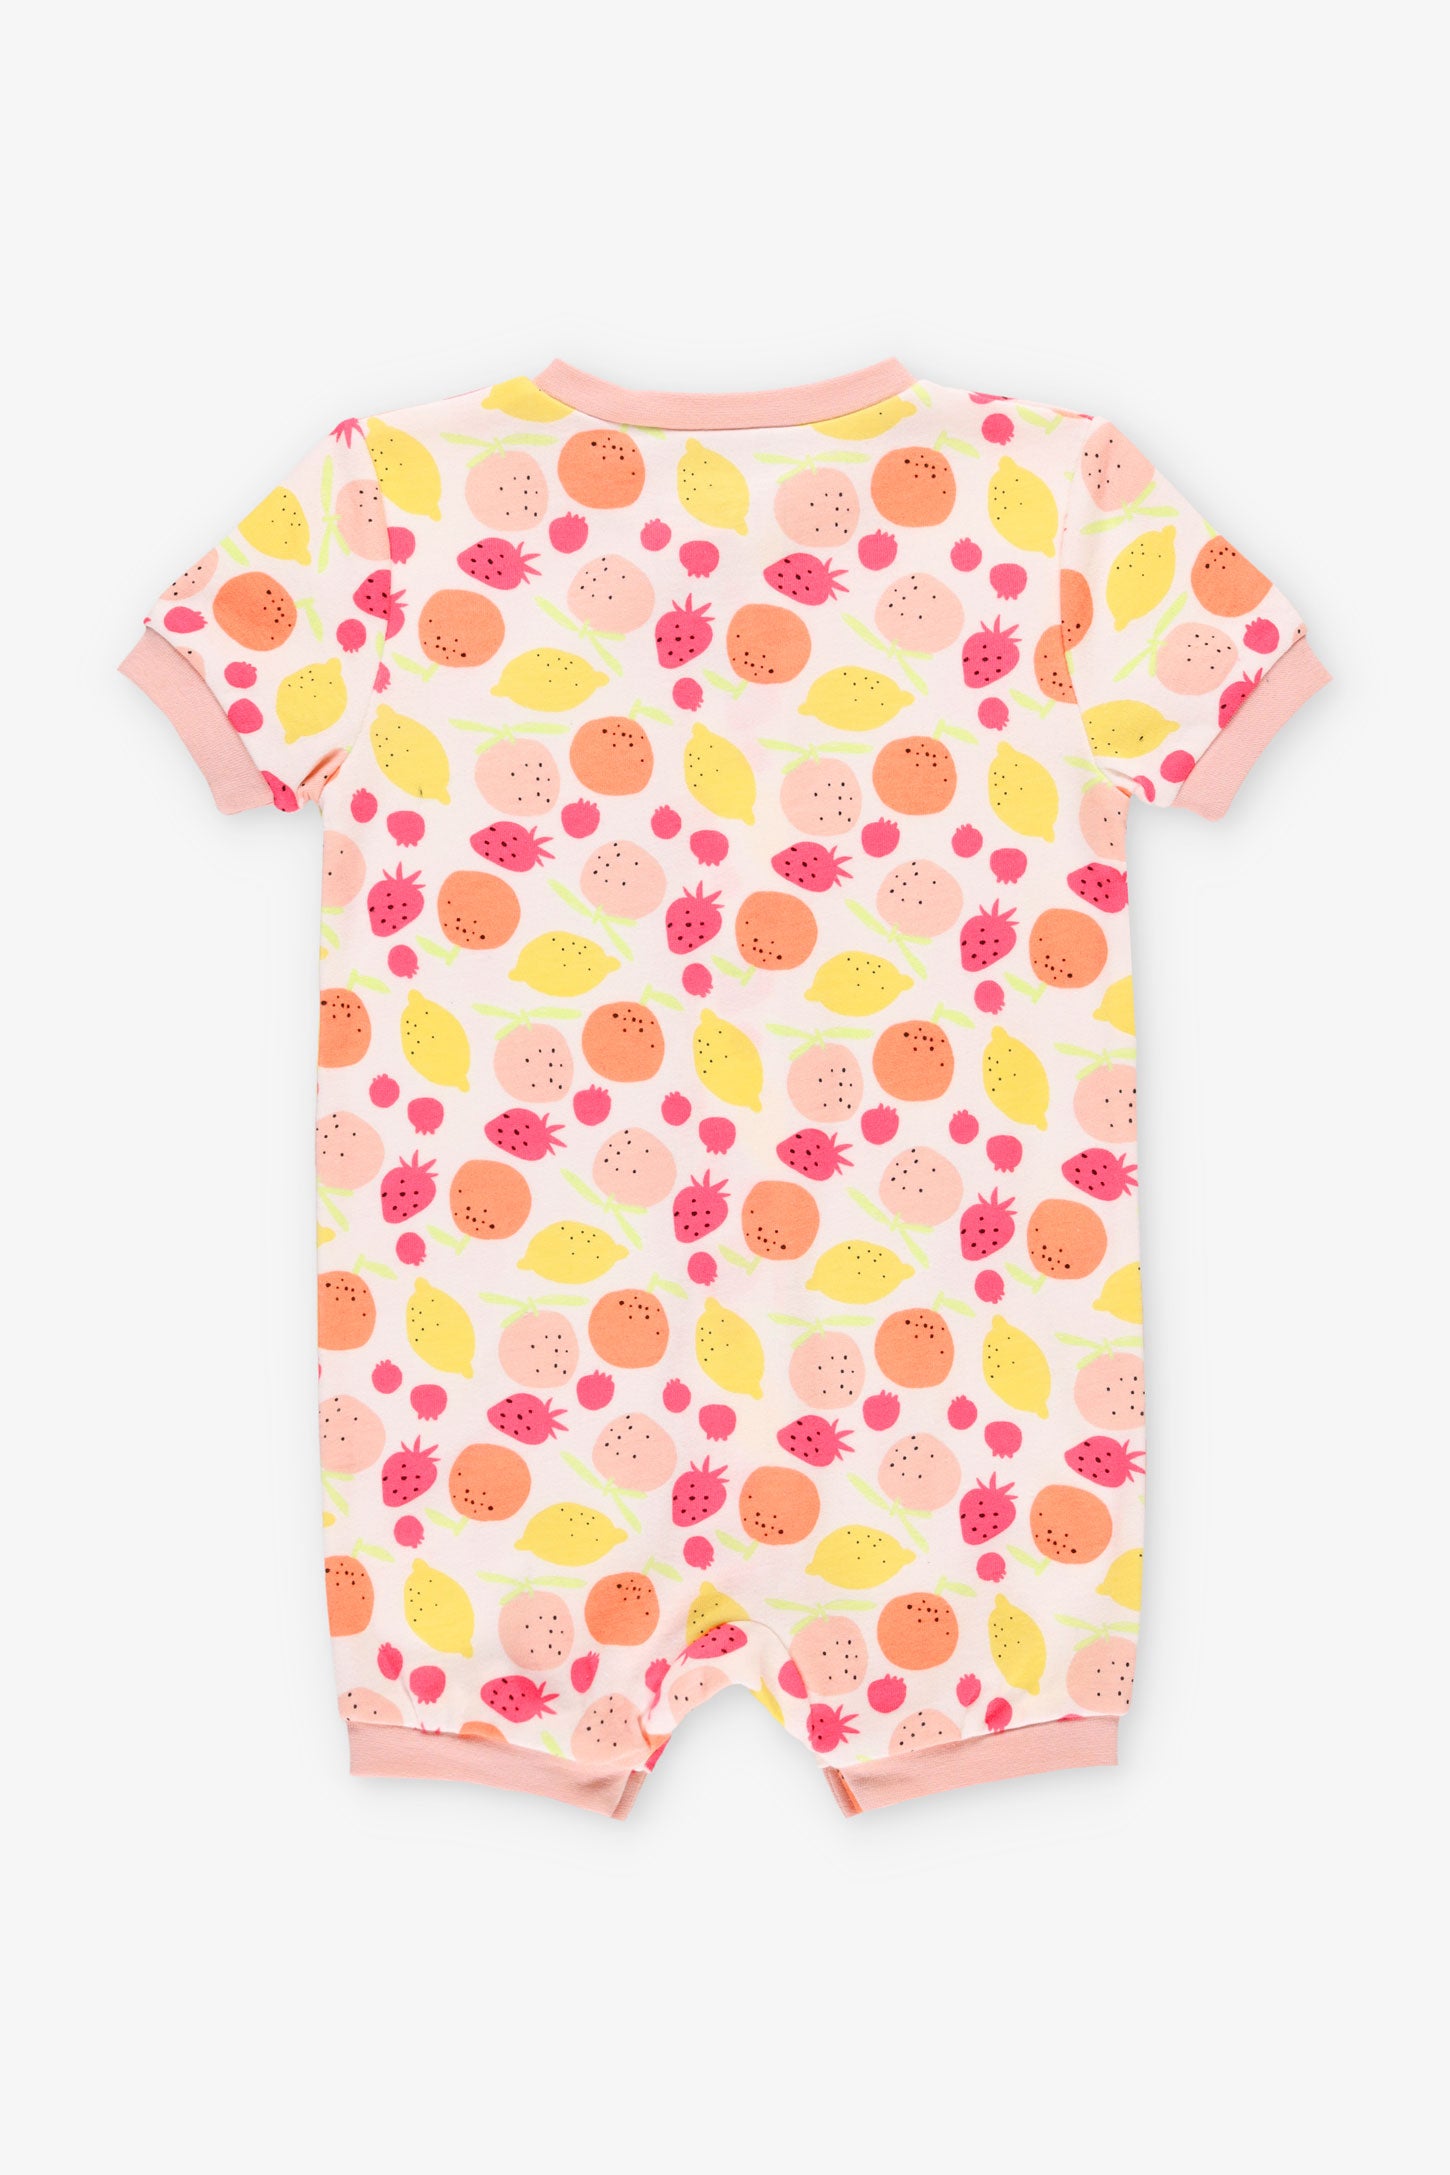 Pyjama 1-pièce combinaison coton bio, 2T-3T - Bébé fille && BLANC MULTI